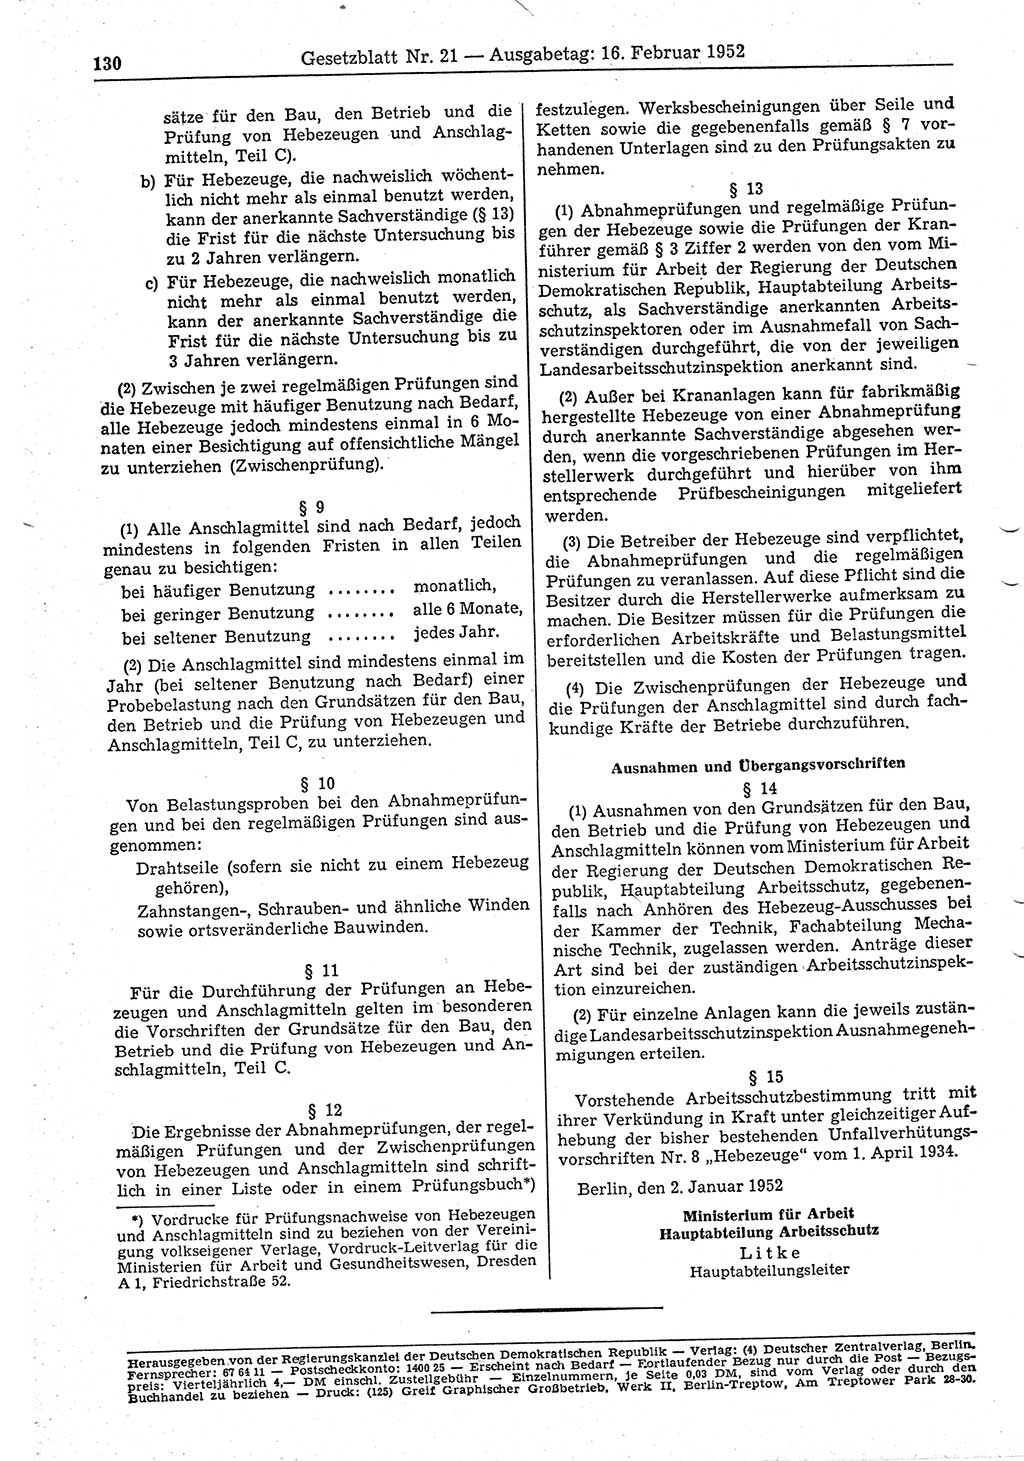 Gesetzblatt (GBl.) der Deutschen Demokratischen Republik (DDR) 1952, Seite 130 (GBl. DDR 1952, S. 130)